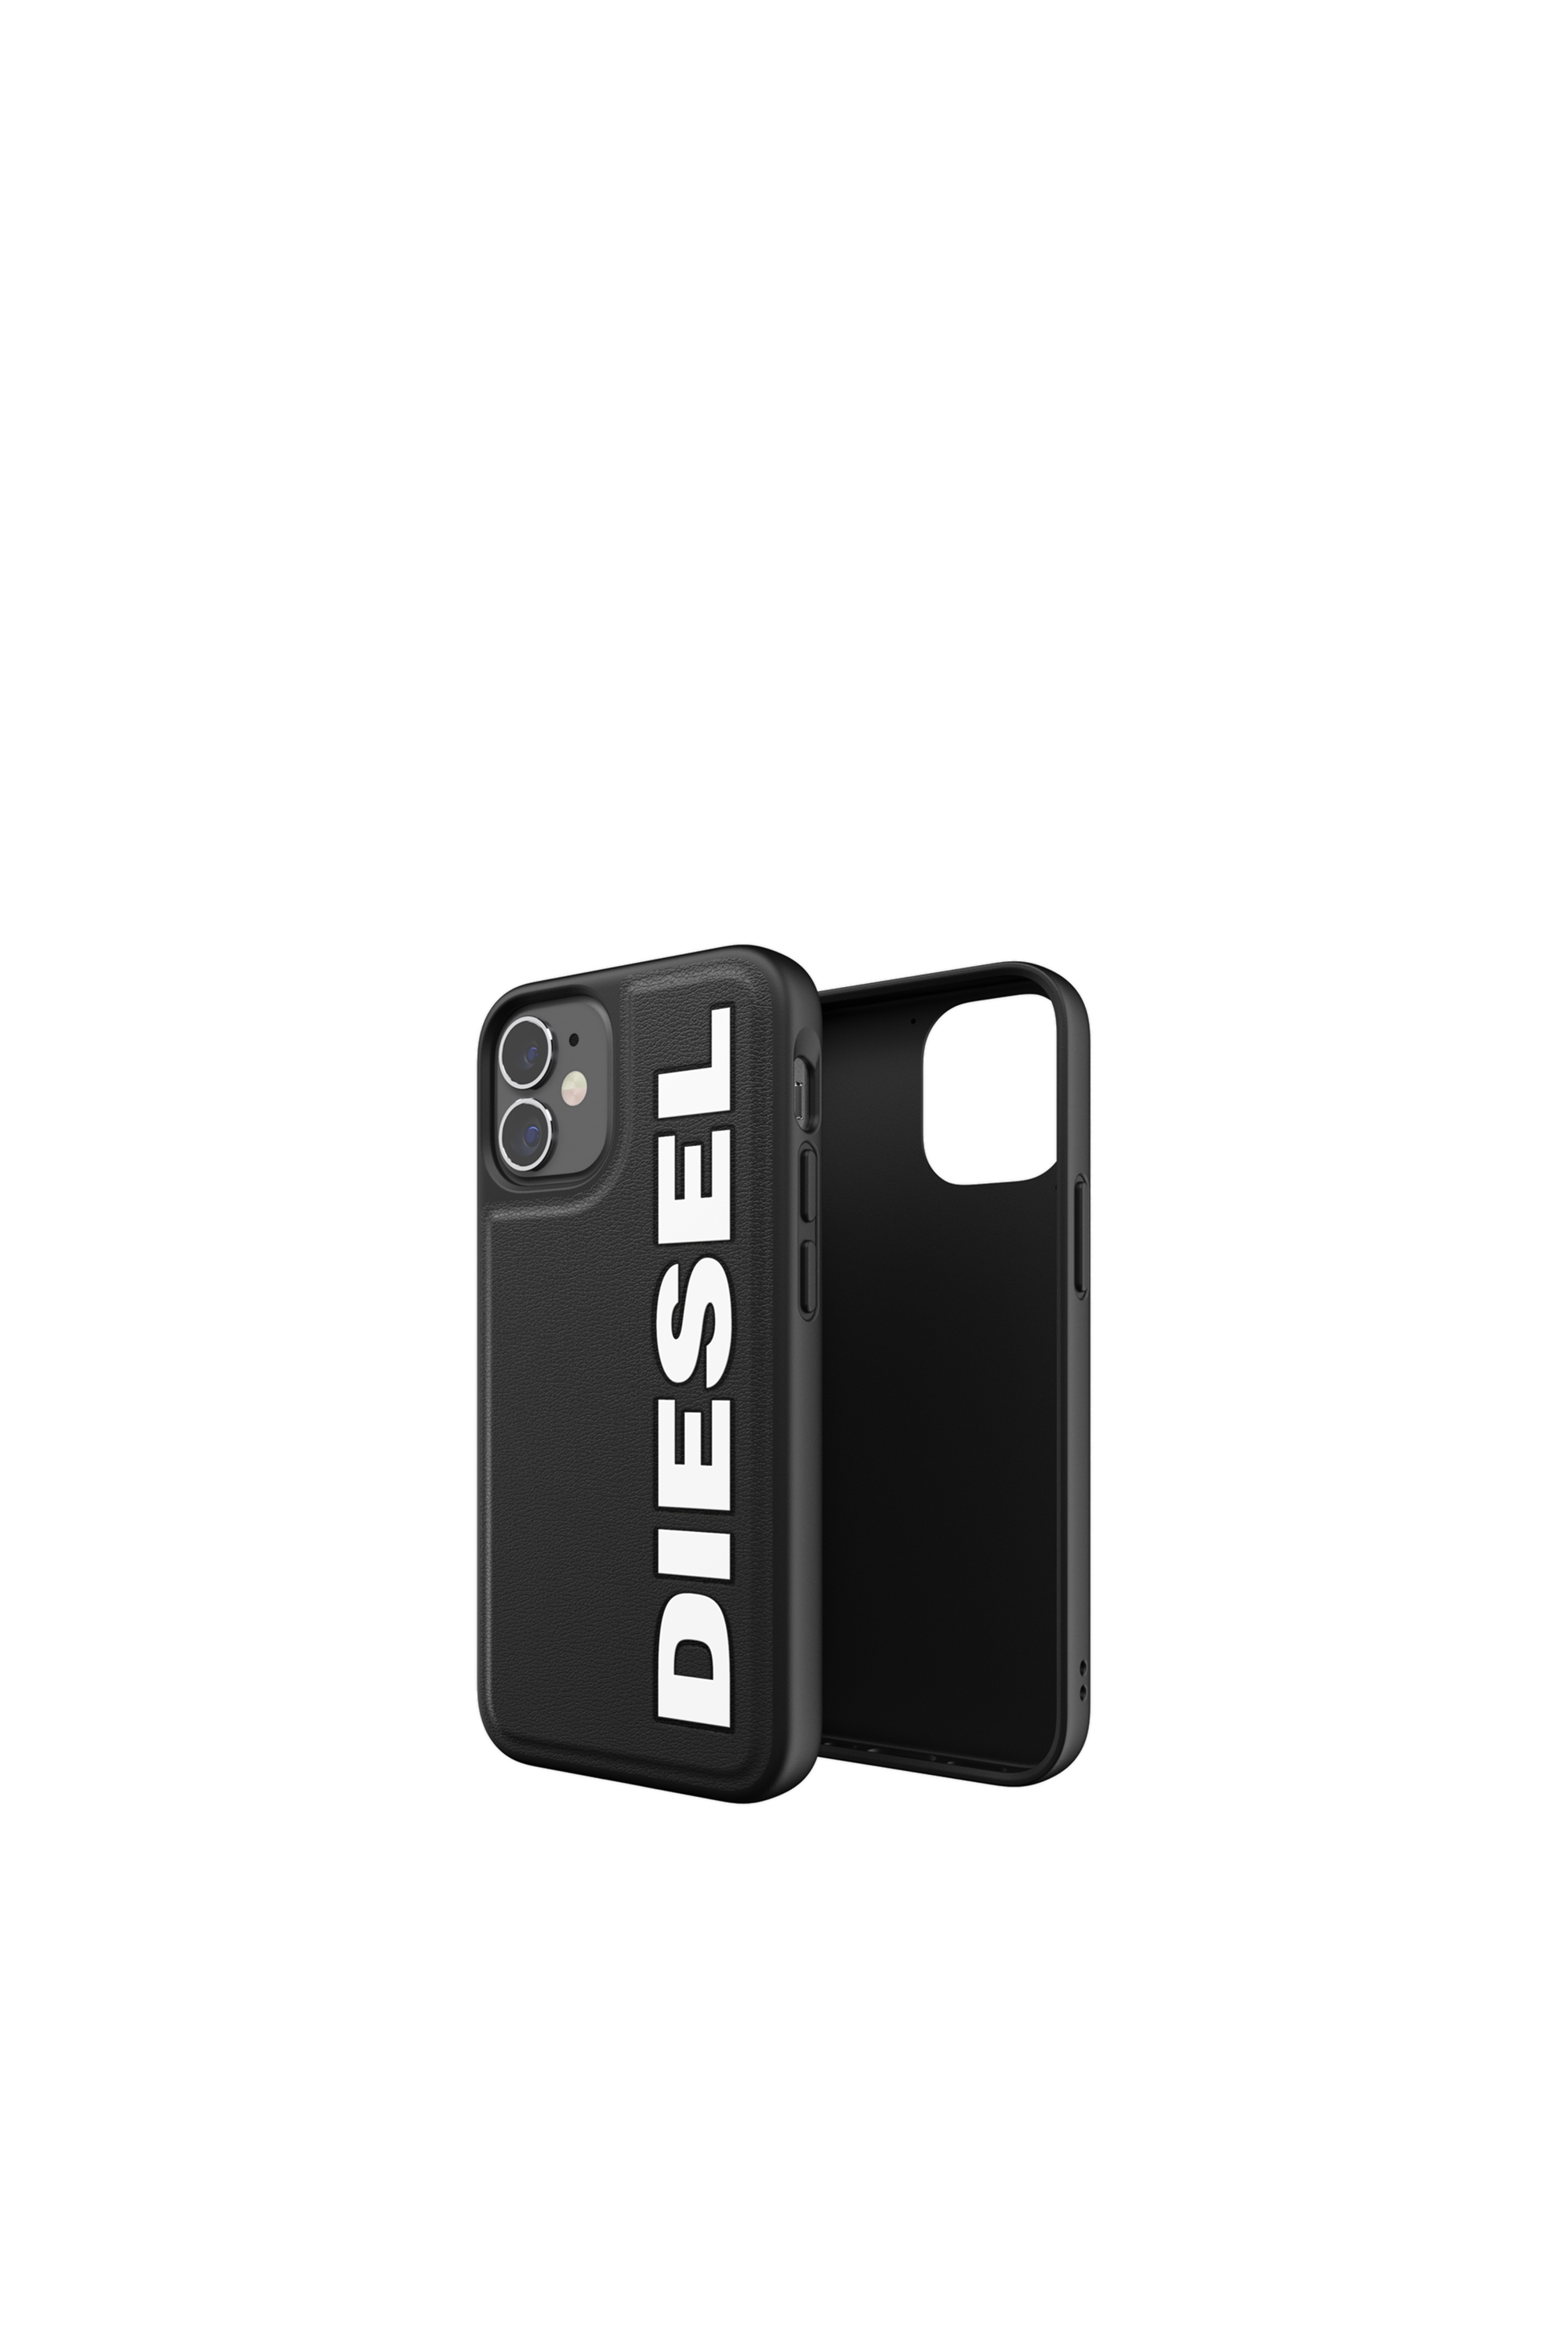 Diesel - 42491, Black - Image 1